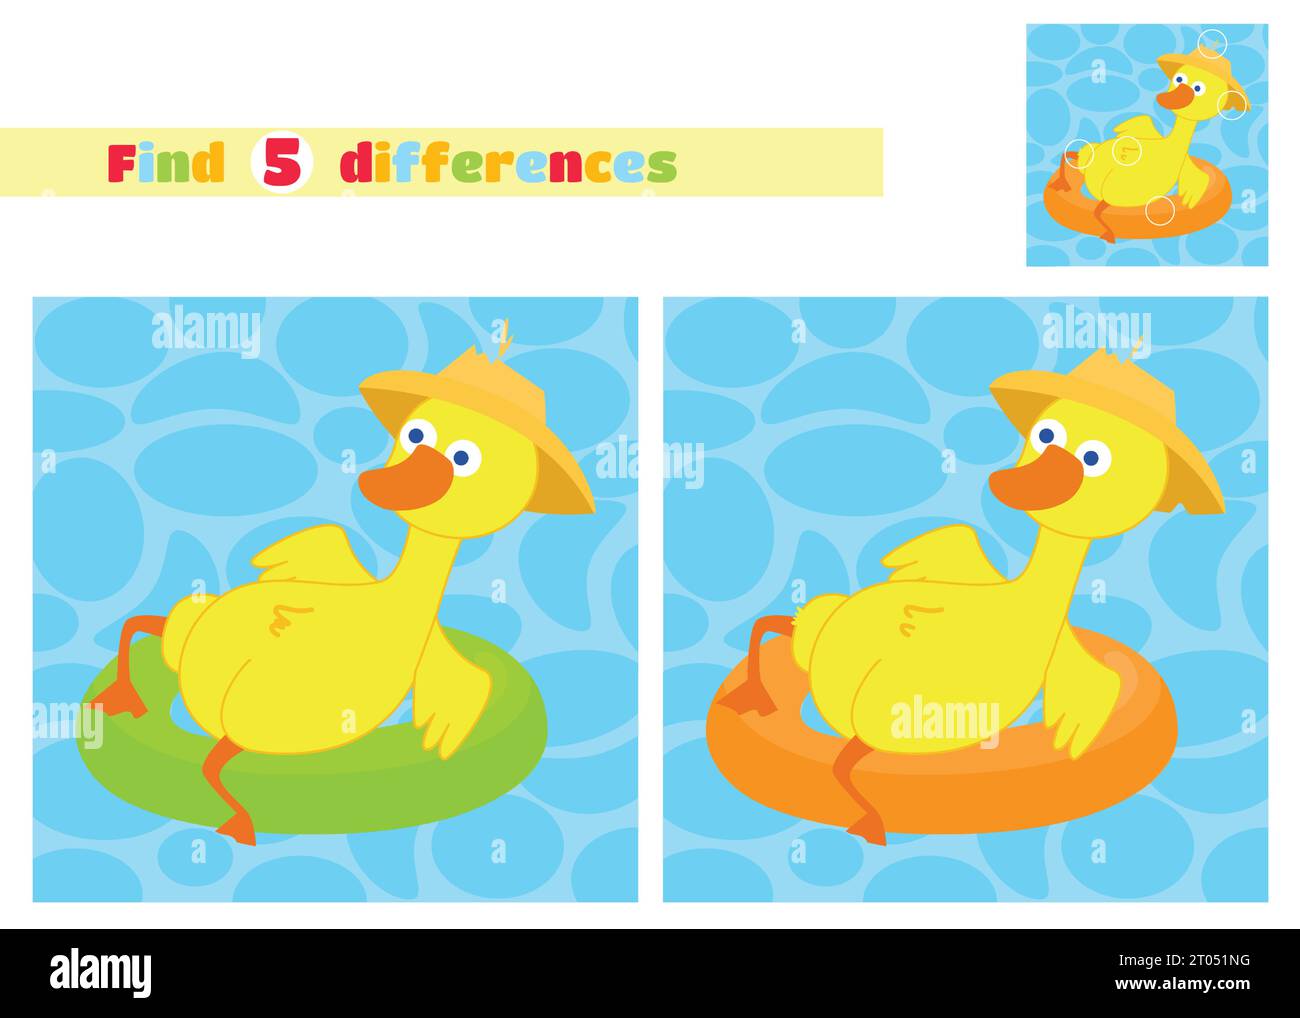 Finden Sie die Unterschiede. Eine Ente mit Hut schwimmt auf einem aufblasbaren Kreis im Cartoon-Stil auf dem Wasser. Ein pädagogisches Spiel für Kinder. Stock Vektor